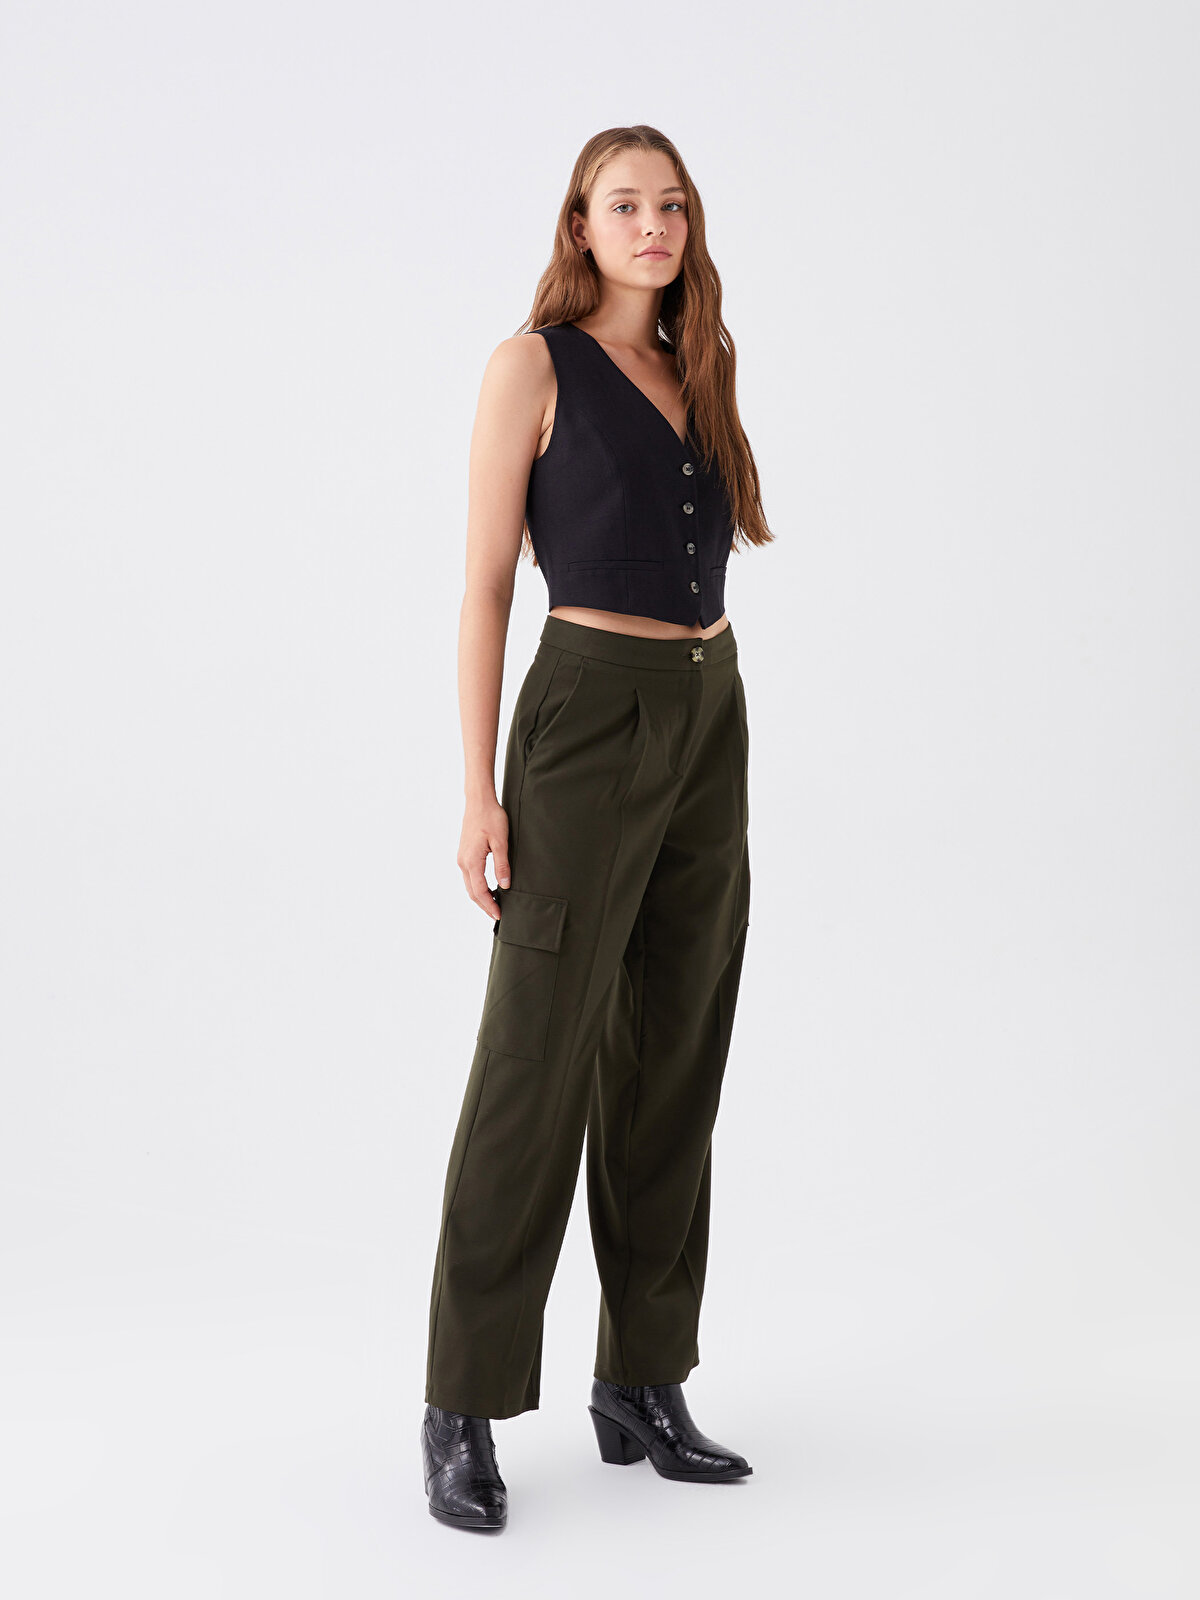 Women's Pants - Leather Pants, Trousers & More | Ksubi ++